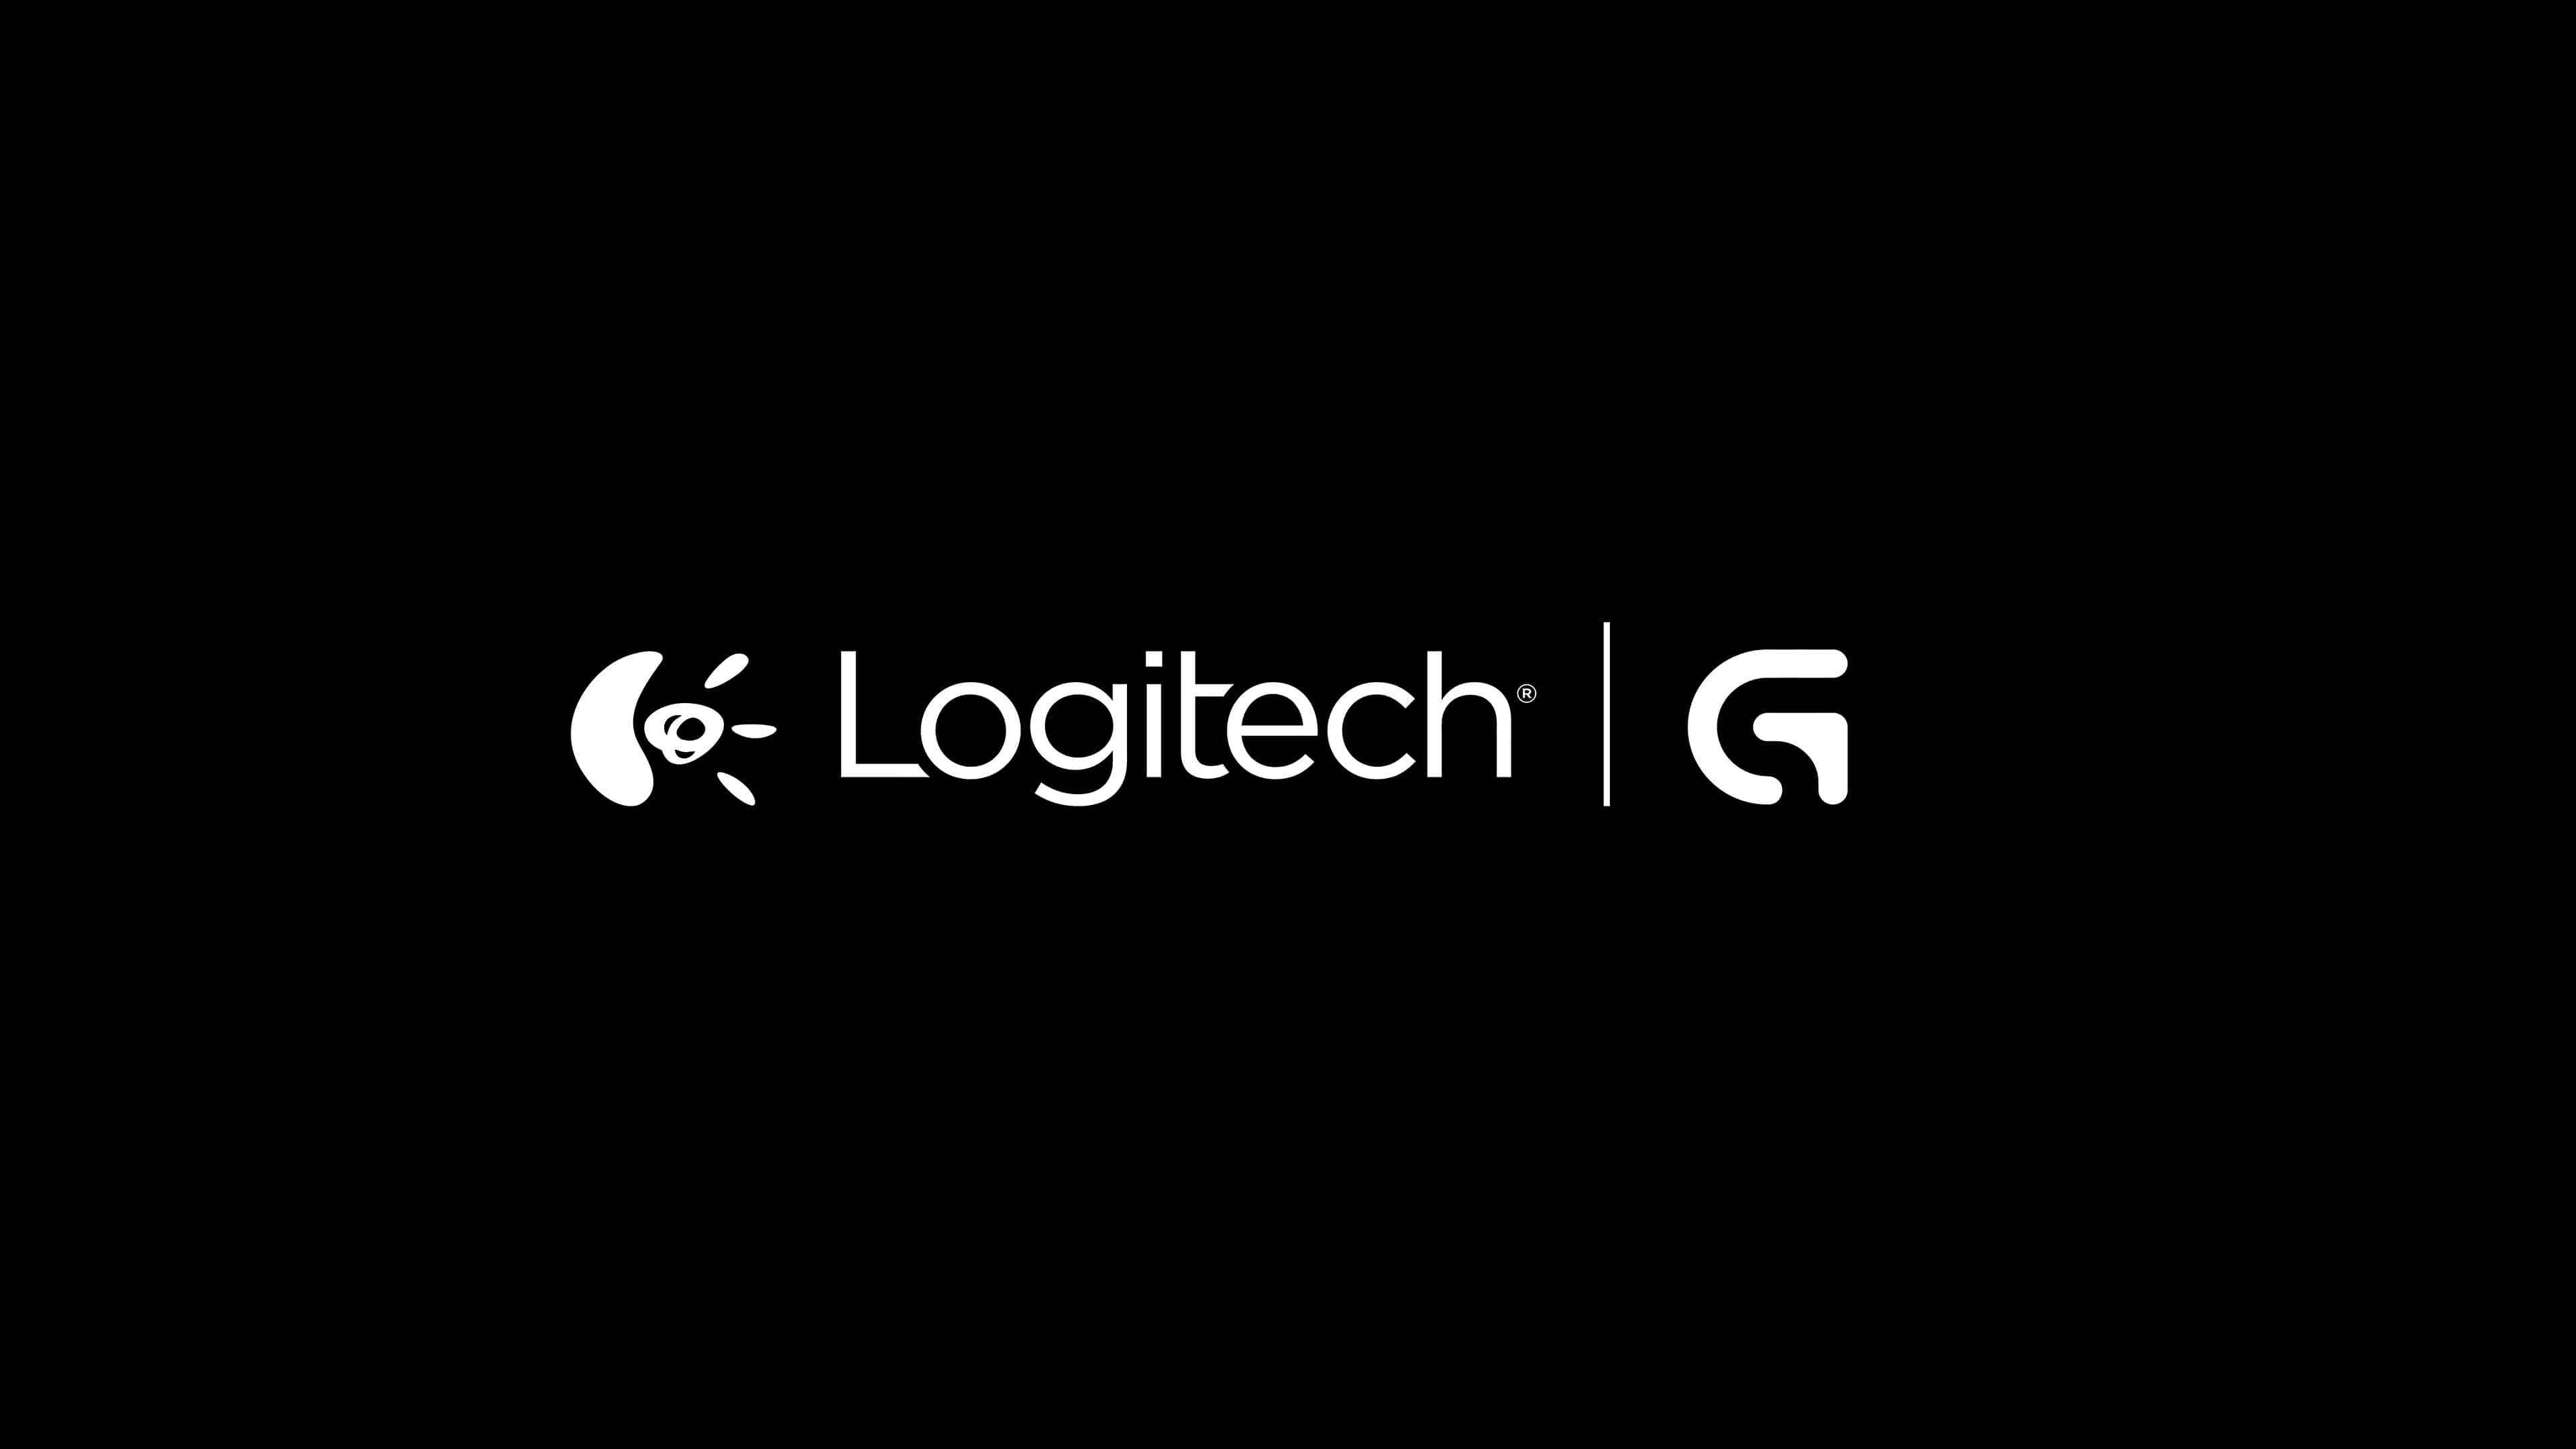 Logitech, Logitech 4K wallpapers, Immersive experience, Lifelike imagery, 3840x2160 4K Desktop